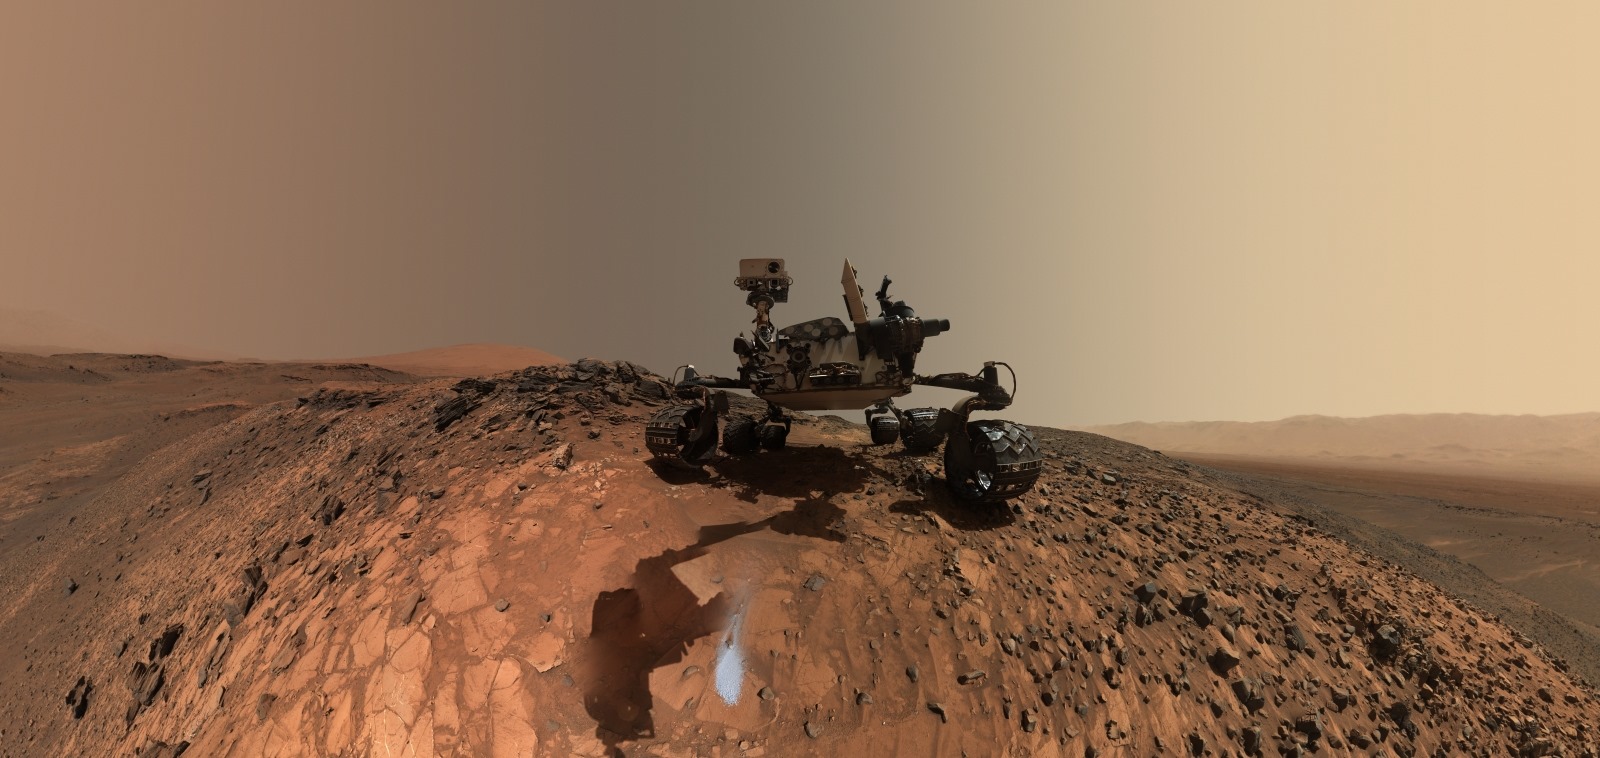 Pourquoi le Curiosity n’irait-il pas analyser l’eau découverte récemment sur Mars ?